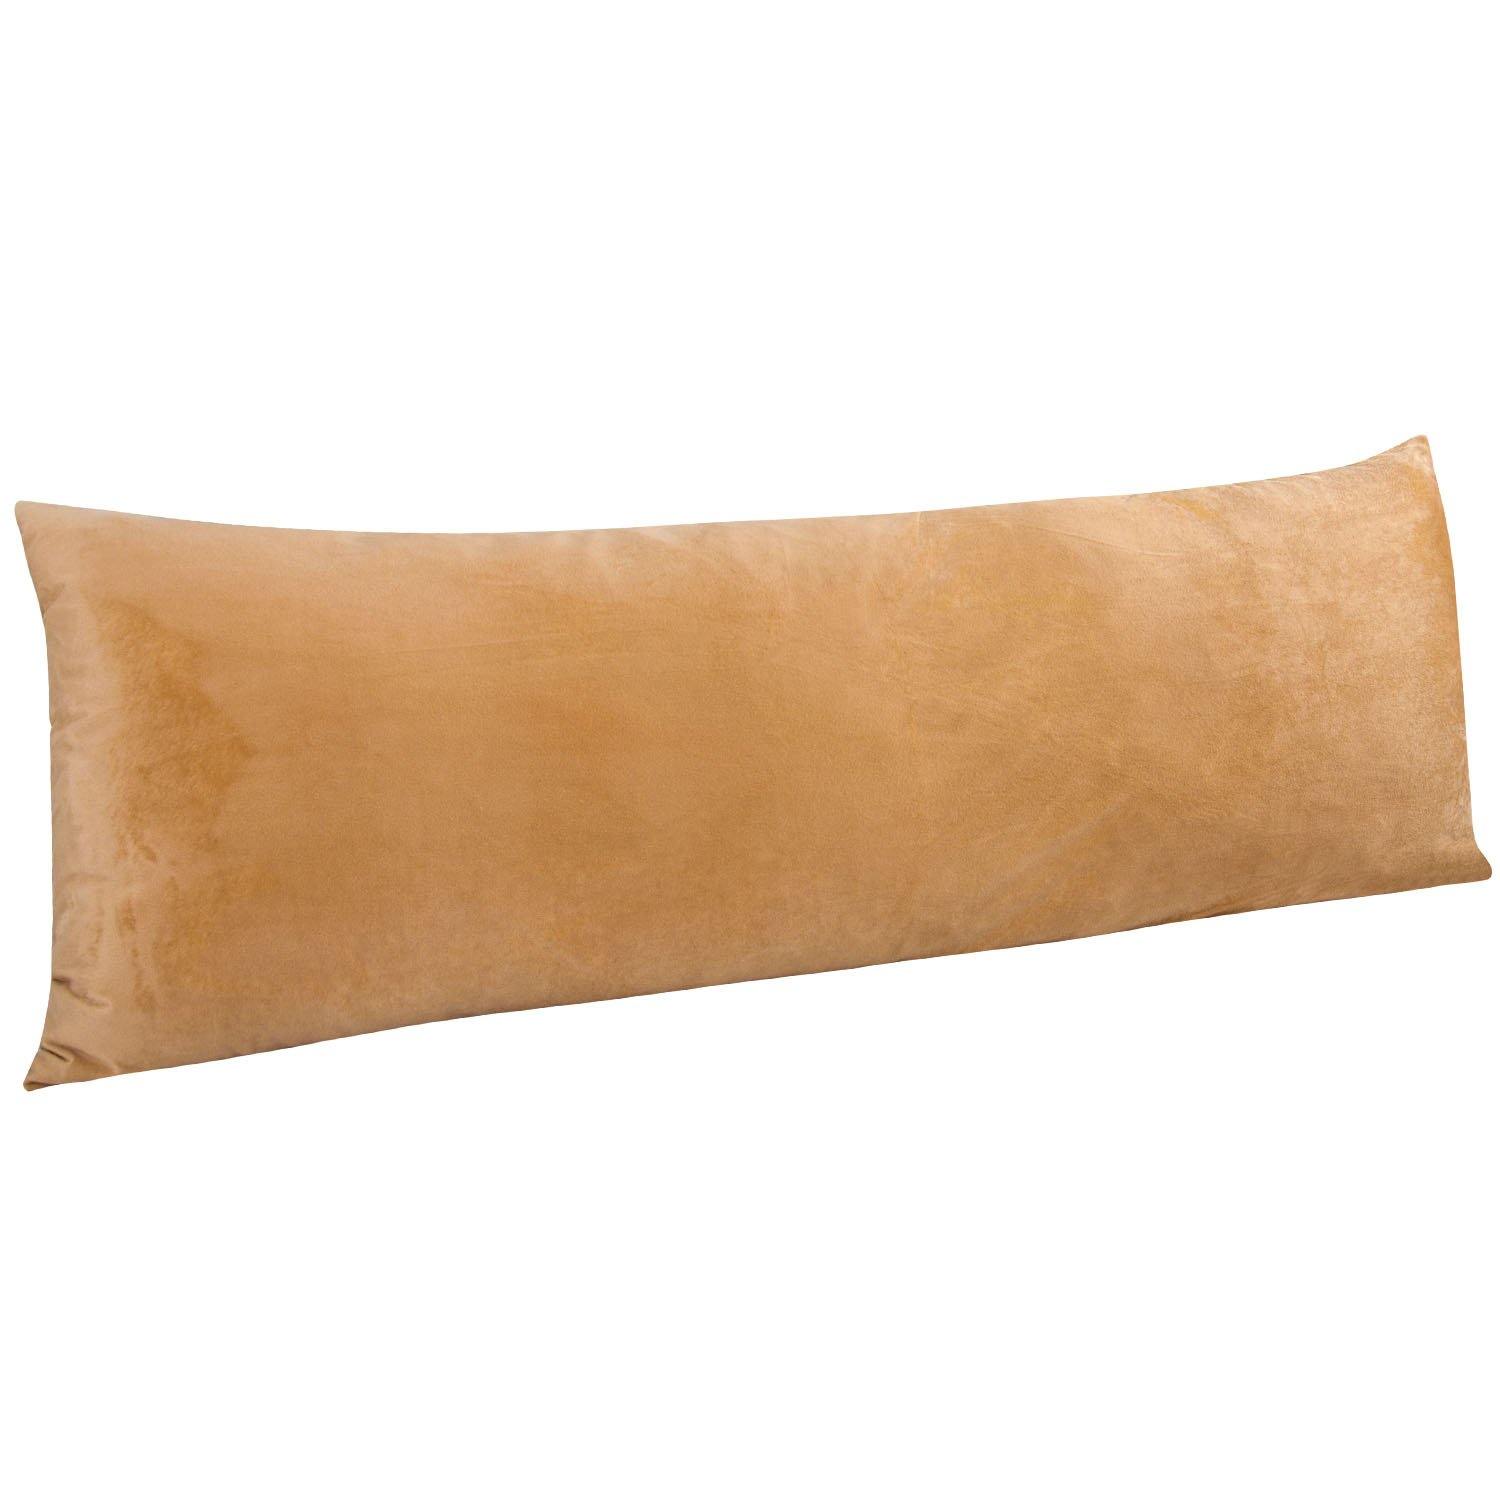 Medium Nude 'Sand' Velvet Bag Pillow (20 x 33 cm) - Handbagholic